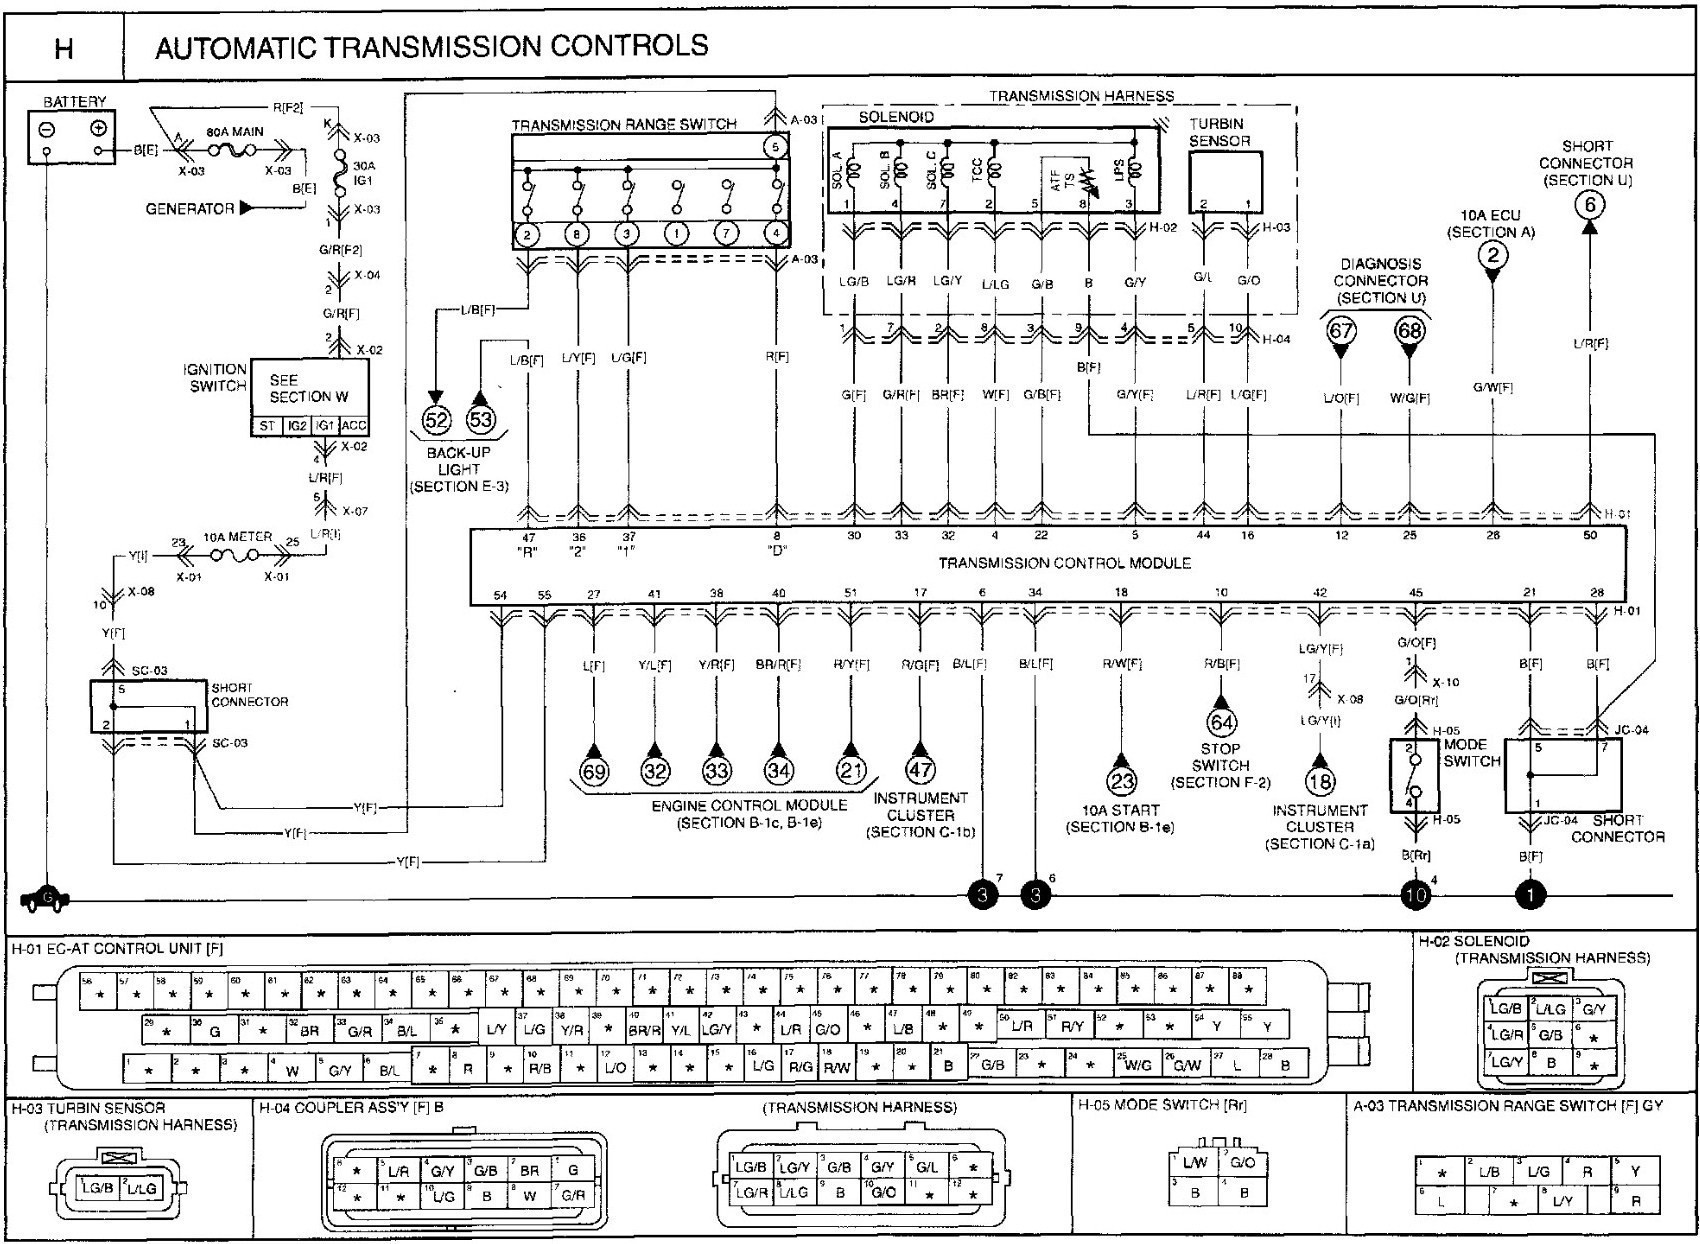 Kia Sedona Wiring Diagram 2007 Kia sorento Wiring Diagram 2007 Kia Sedona Radio Wiring Of Kia Sedona Wiring Diagram